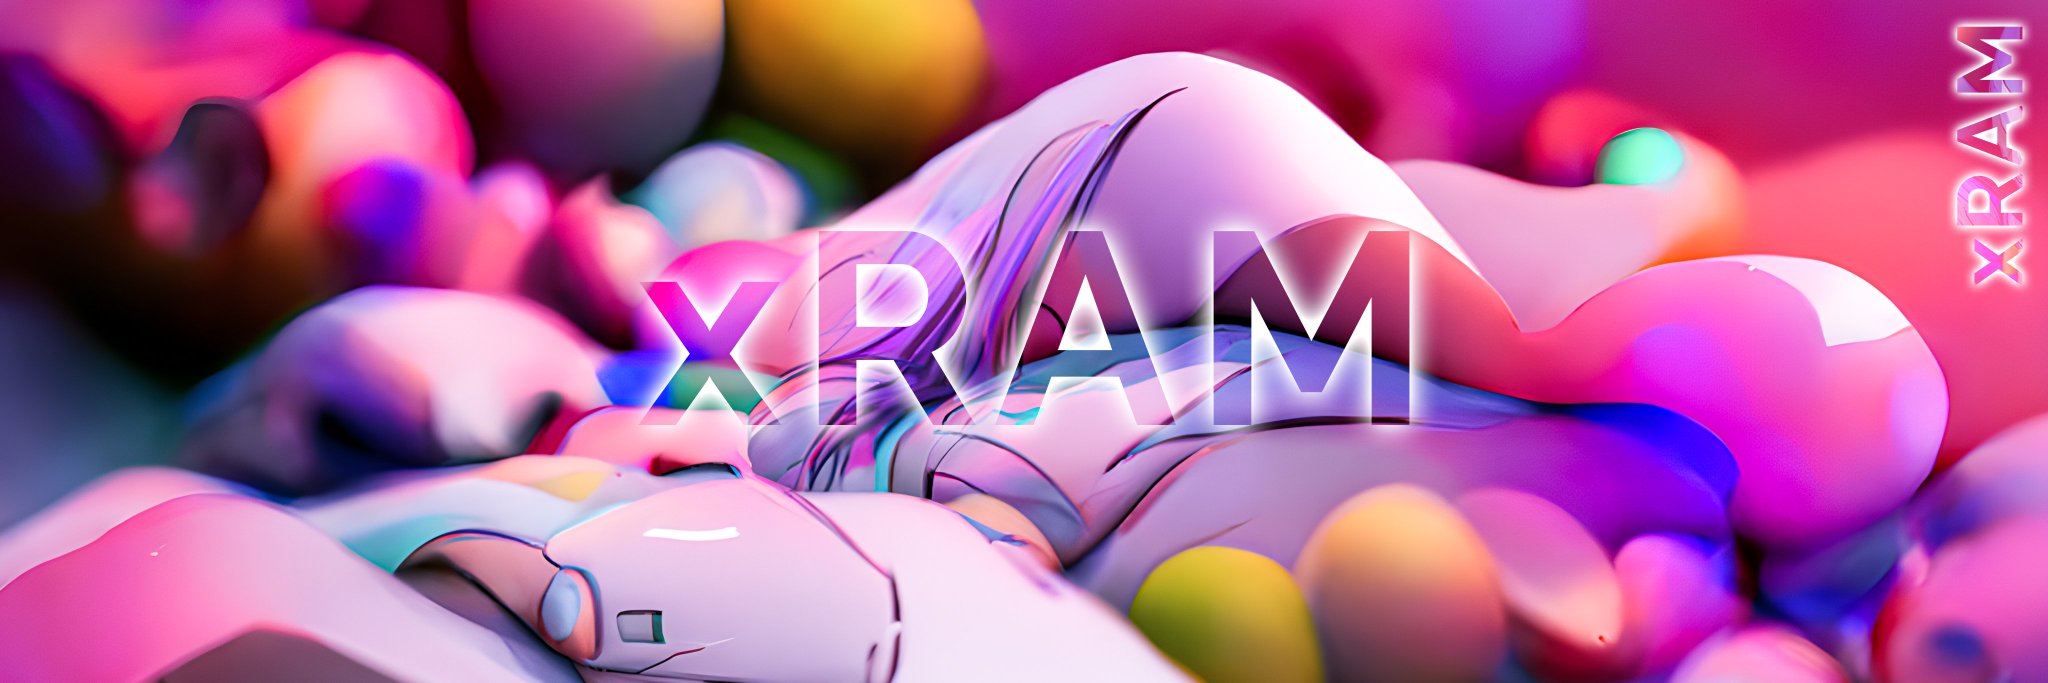 xRAM_Art バナー